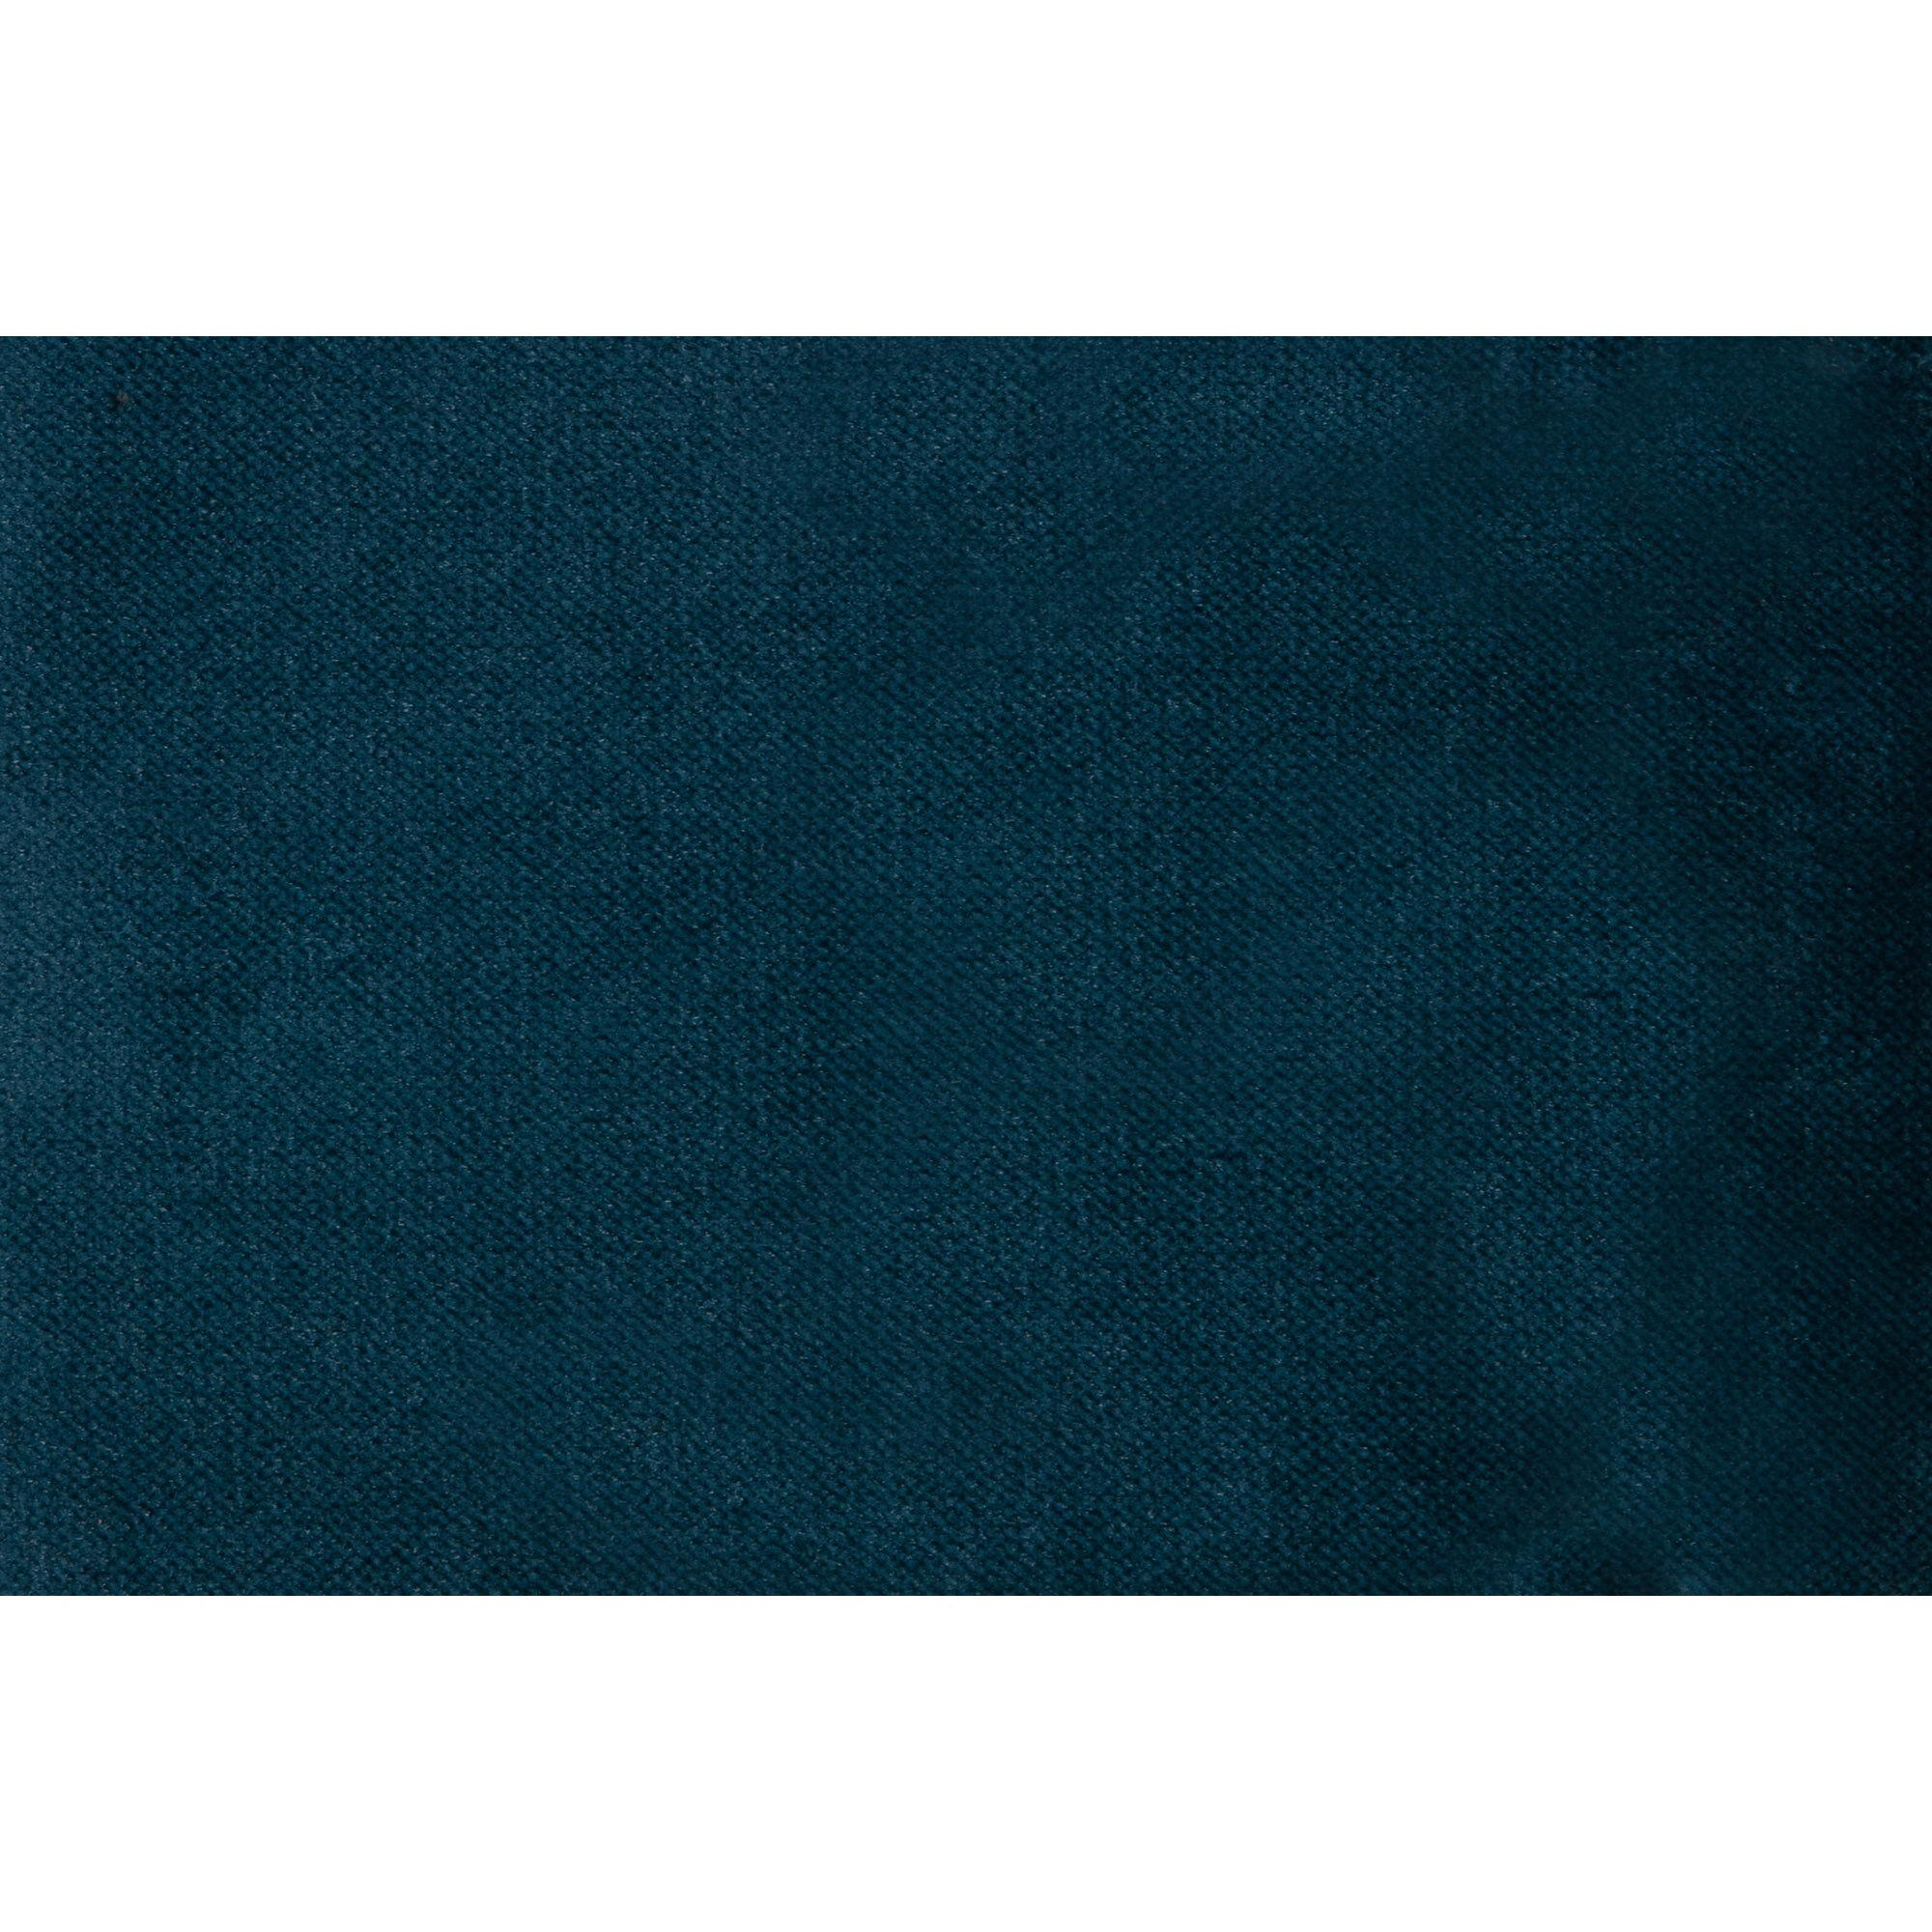  Rodeo Chaiselong Venstrevendt Velour - Blue fra BePureHome i Velour (Varenr: 800905-45)